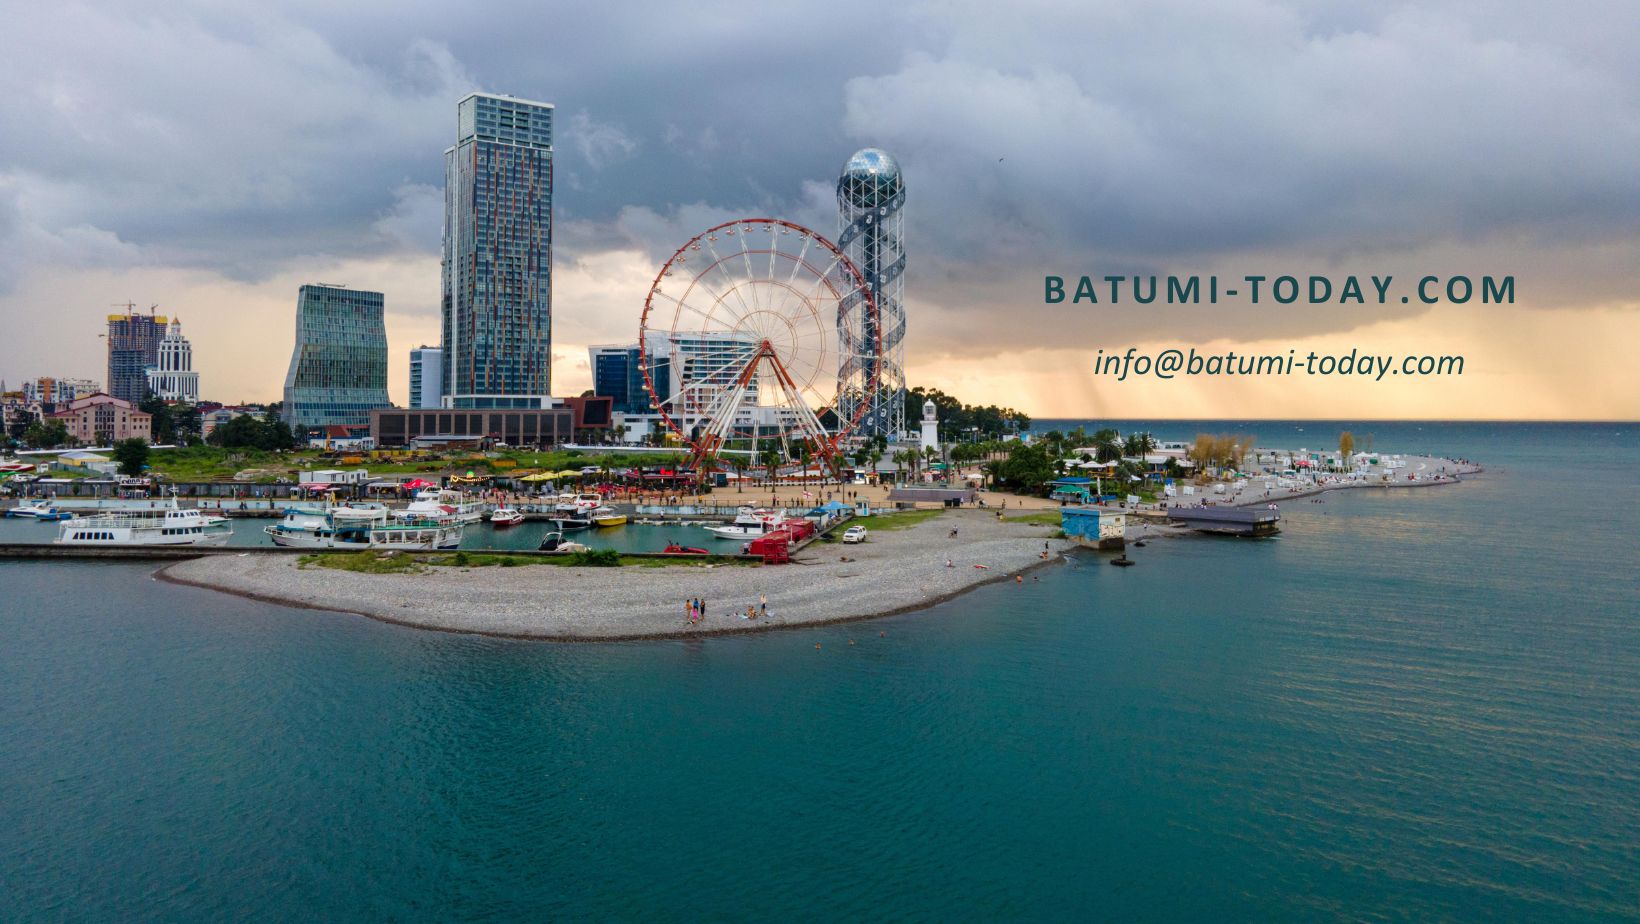 BATUMI-TODAY.COM – информационный портал о Батуми и Грузии приглашает к сотрудничеству